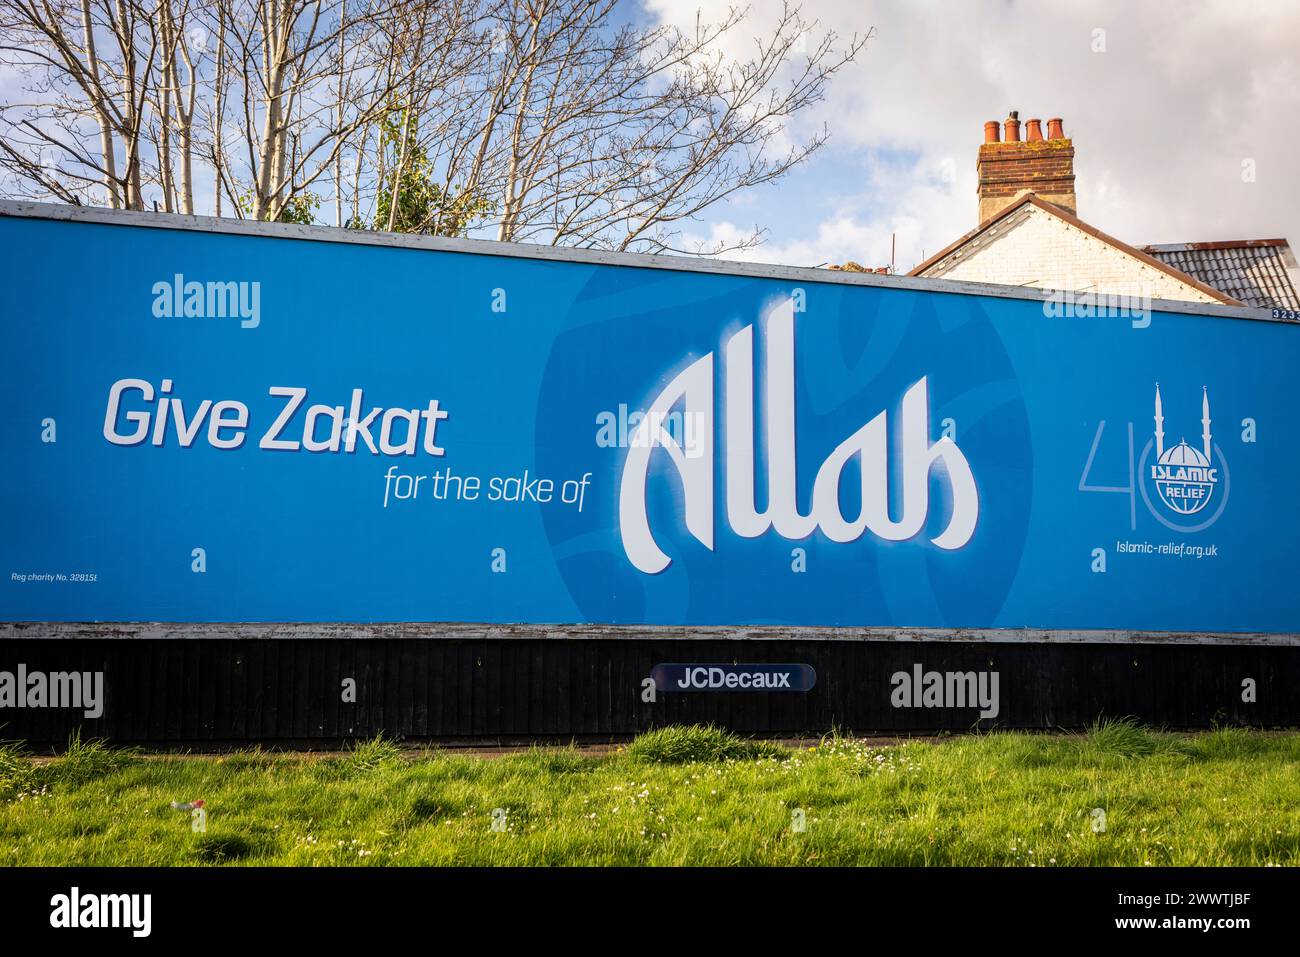 Affiche publicitaire pour l'organisation caritative Islamic relief pour faire / donner un don de Zakat pour le bien d'Allah, Southampton, Hampshire, Angleterre, Royaume-Uni Banque D'Images